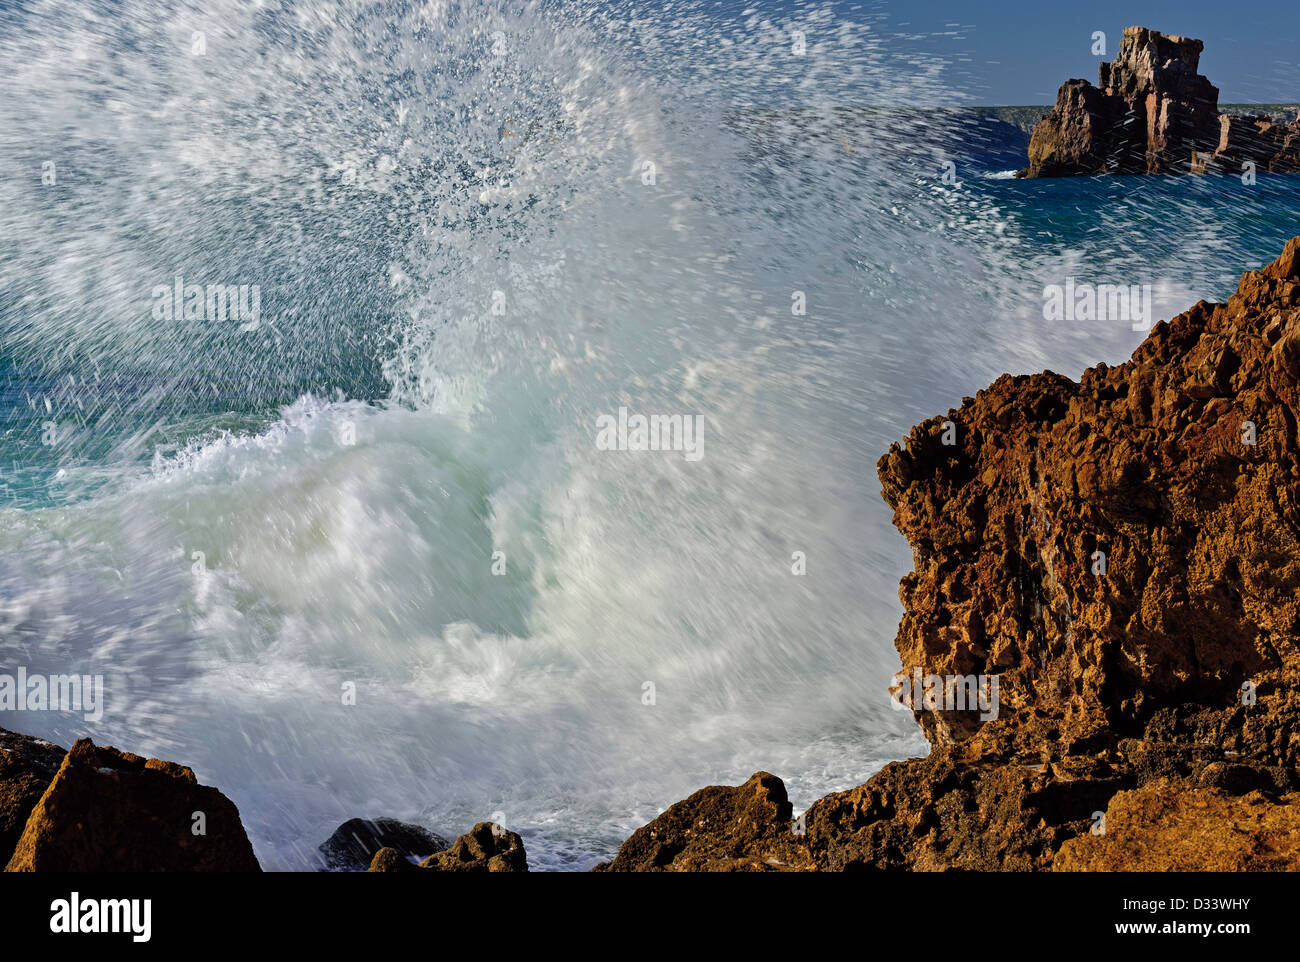 Portugal, Algarve: enorme ola en las rocas de la Praia do tonel en Sagres Foto de stock